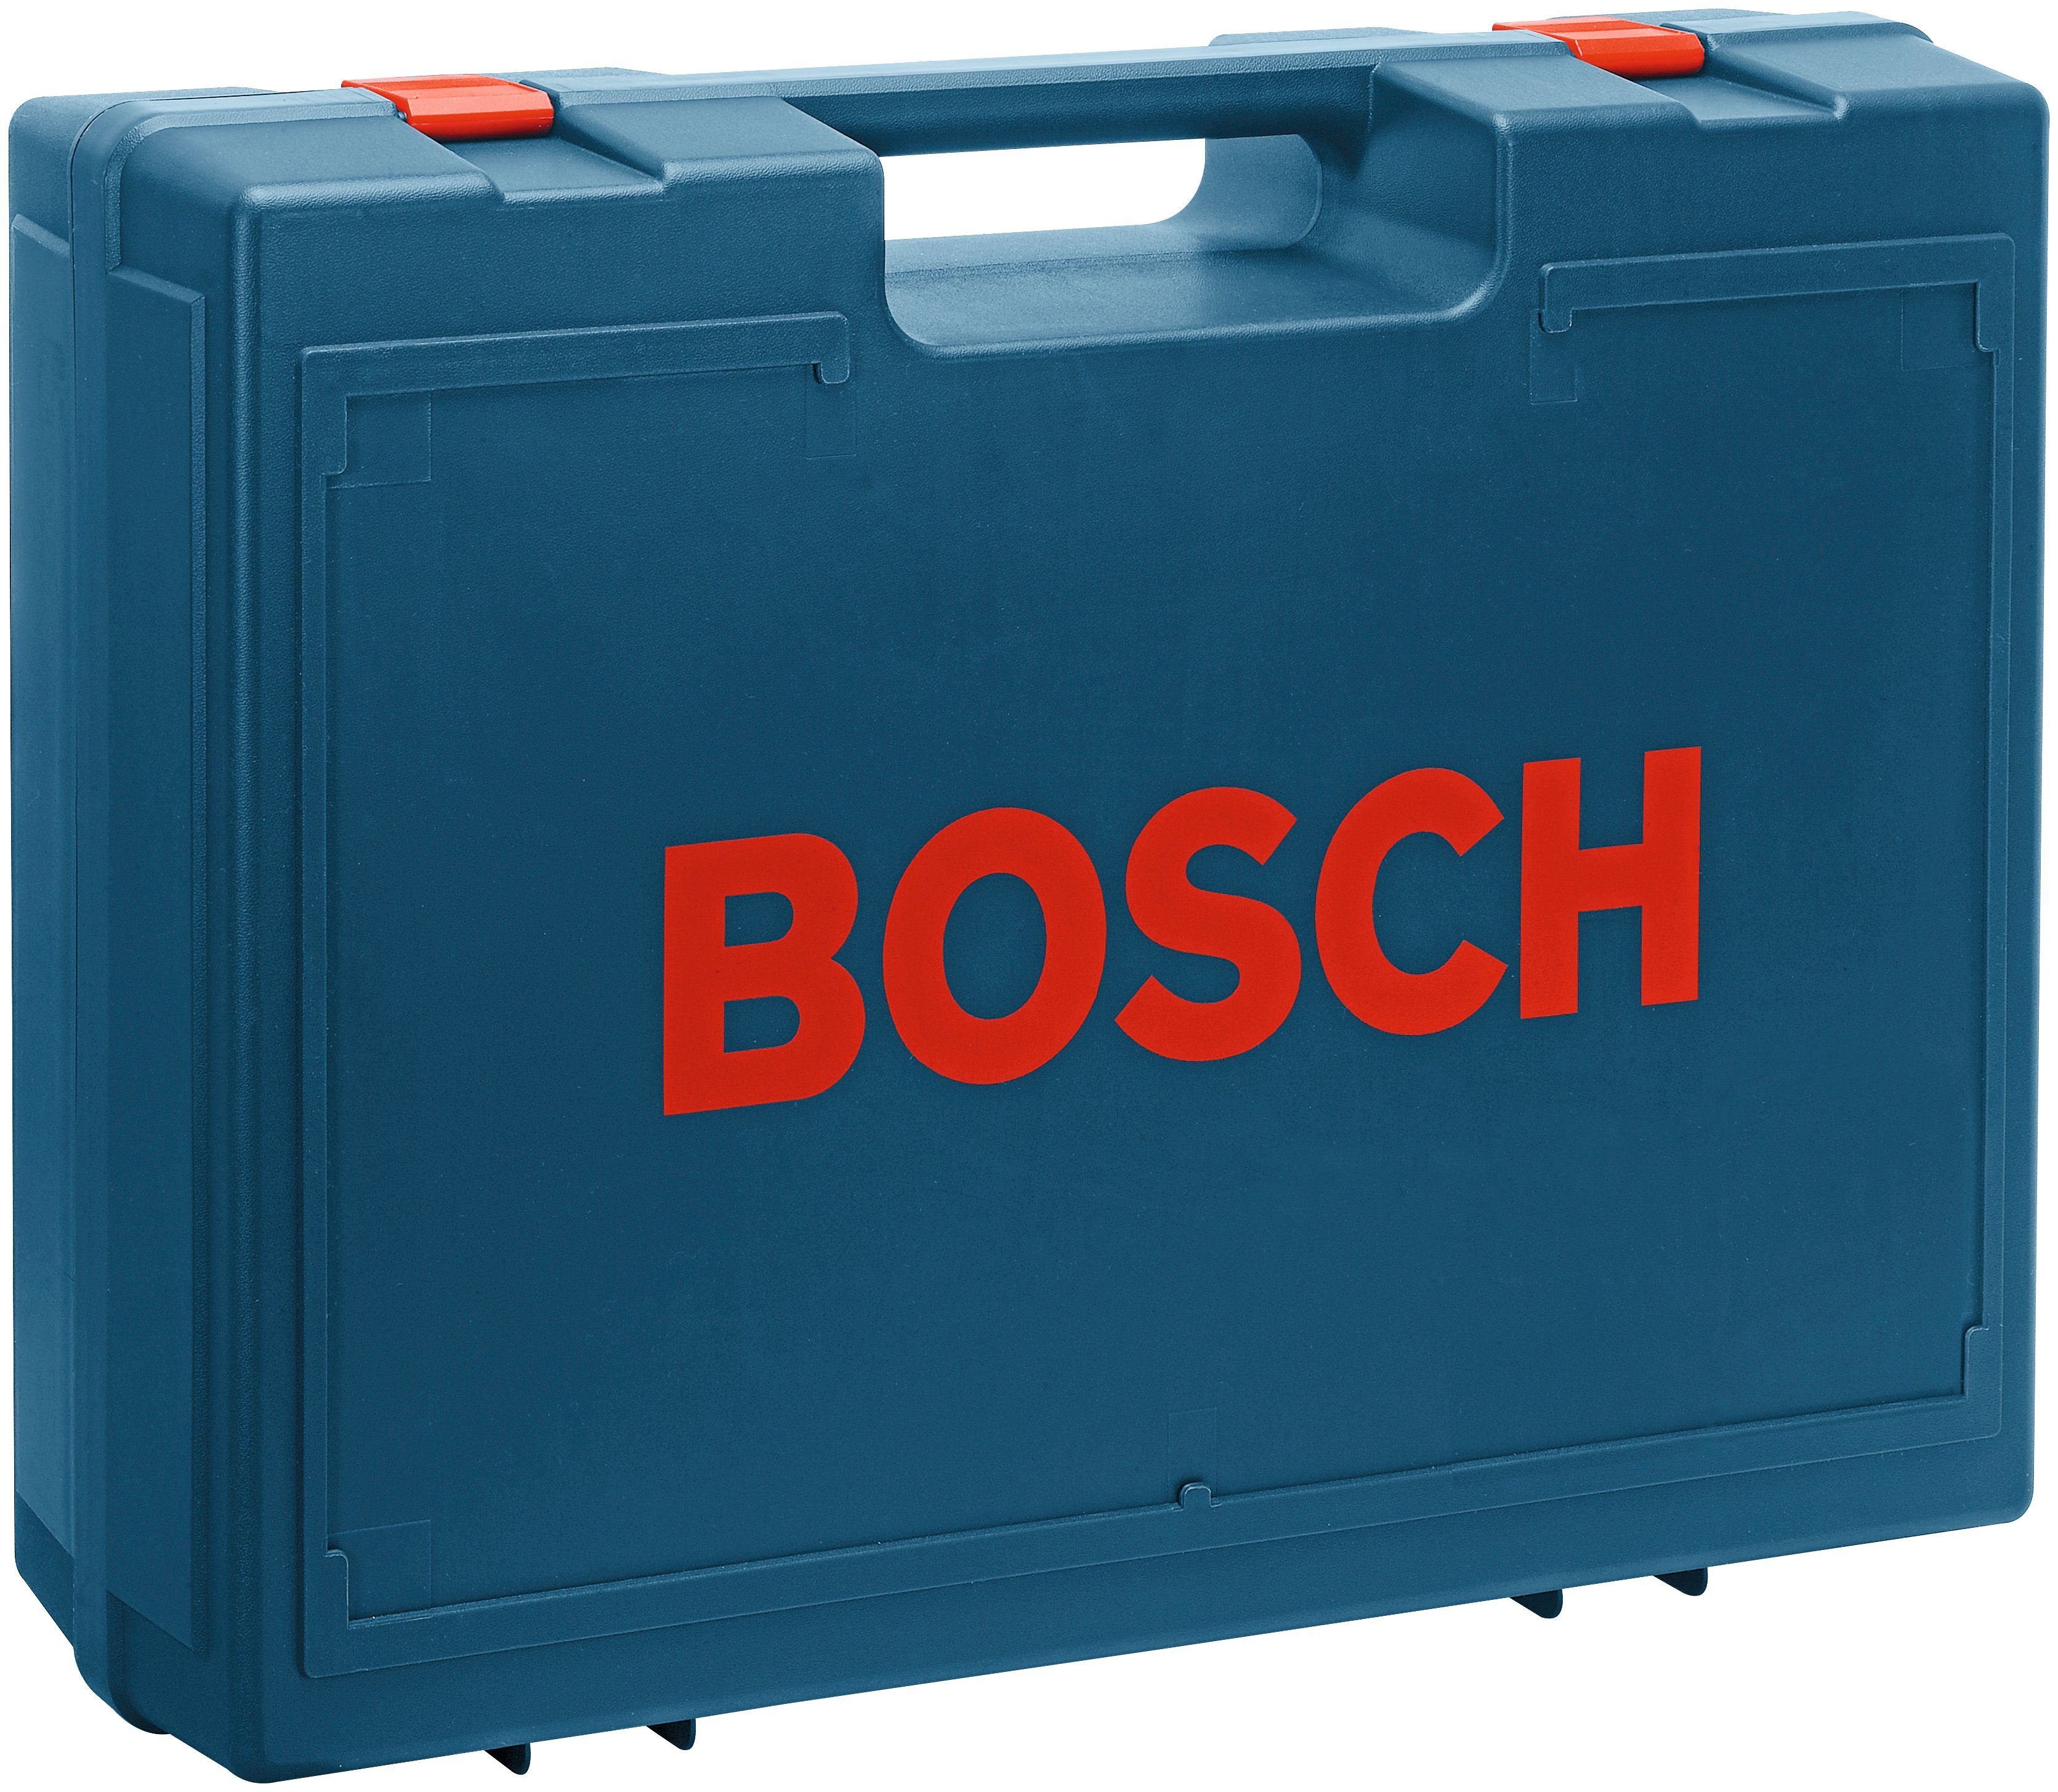 Bosch Professional Exzenterschleifer GEX 125-1 AE, 24000 U/min